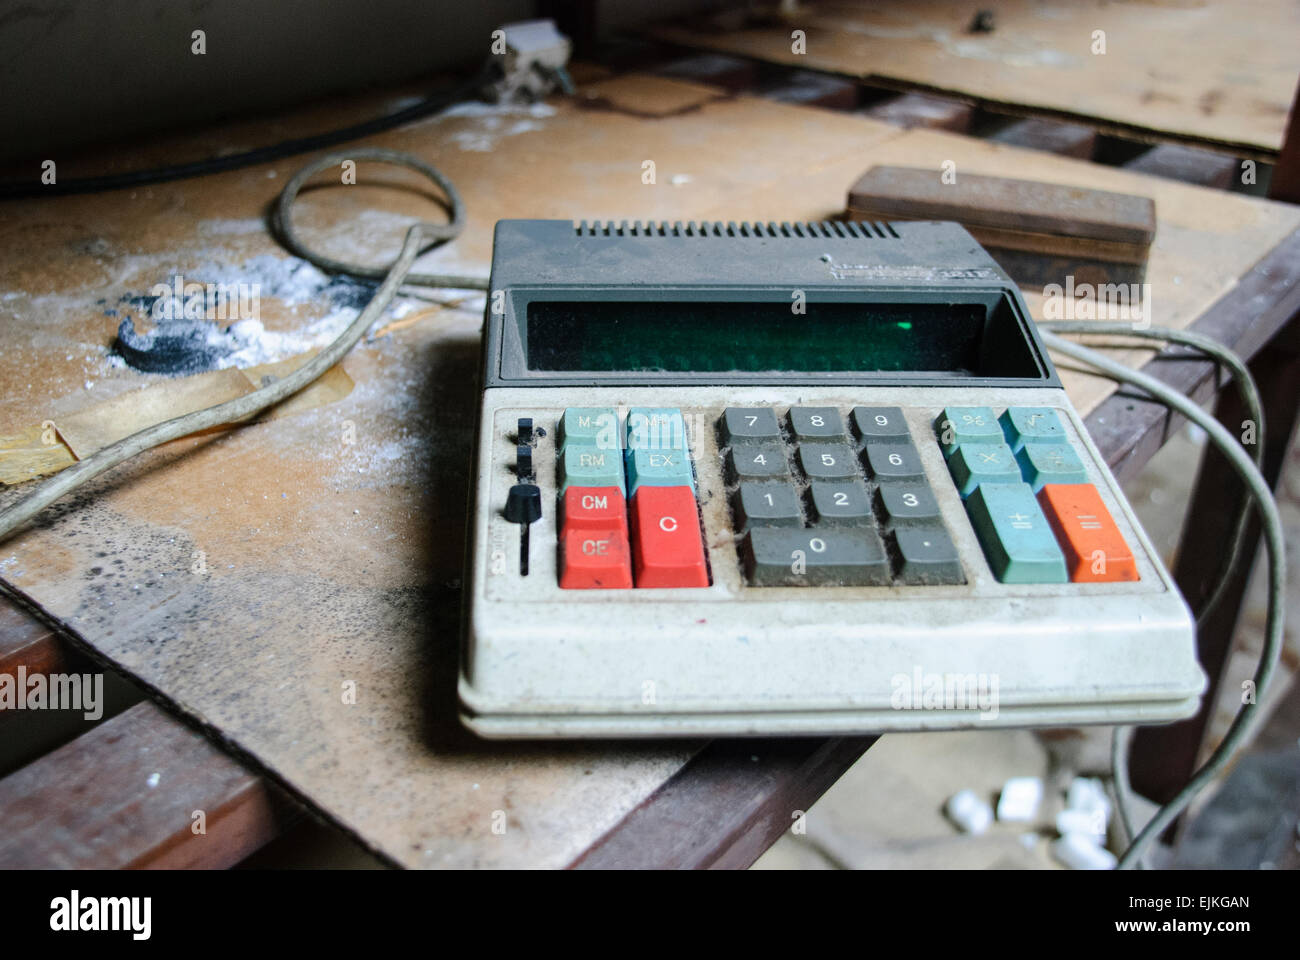 Calcolatore vecchio coperto di sporco su un ripiano di sporco Foto Stock